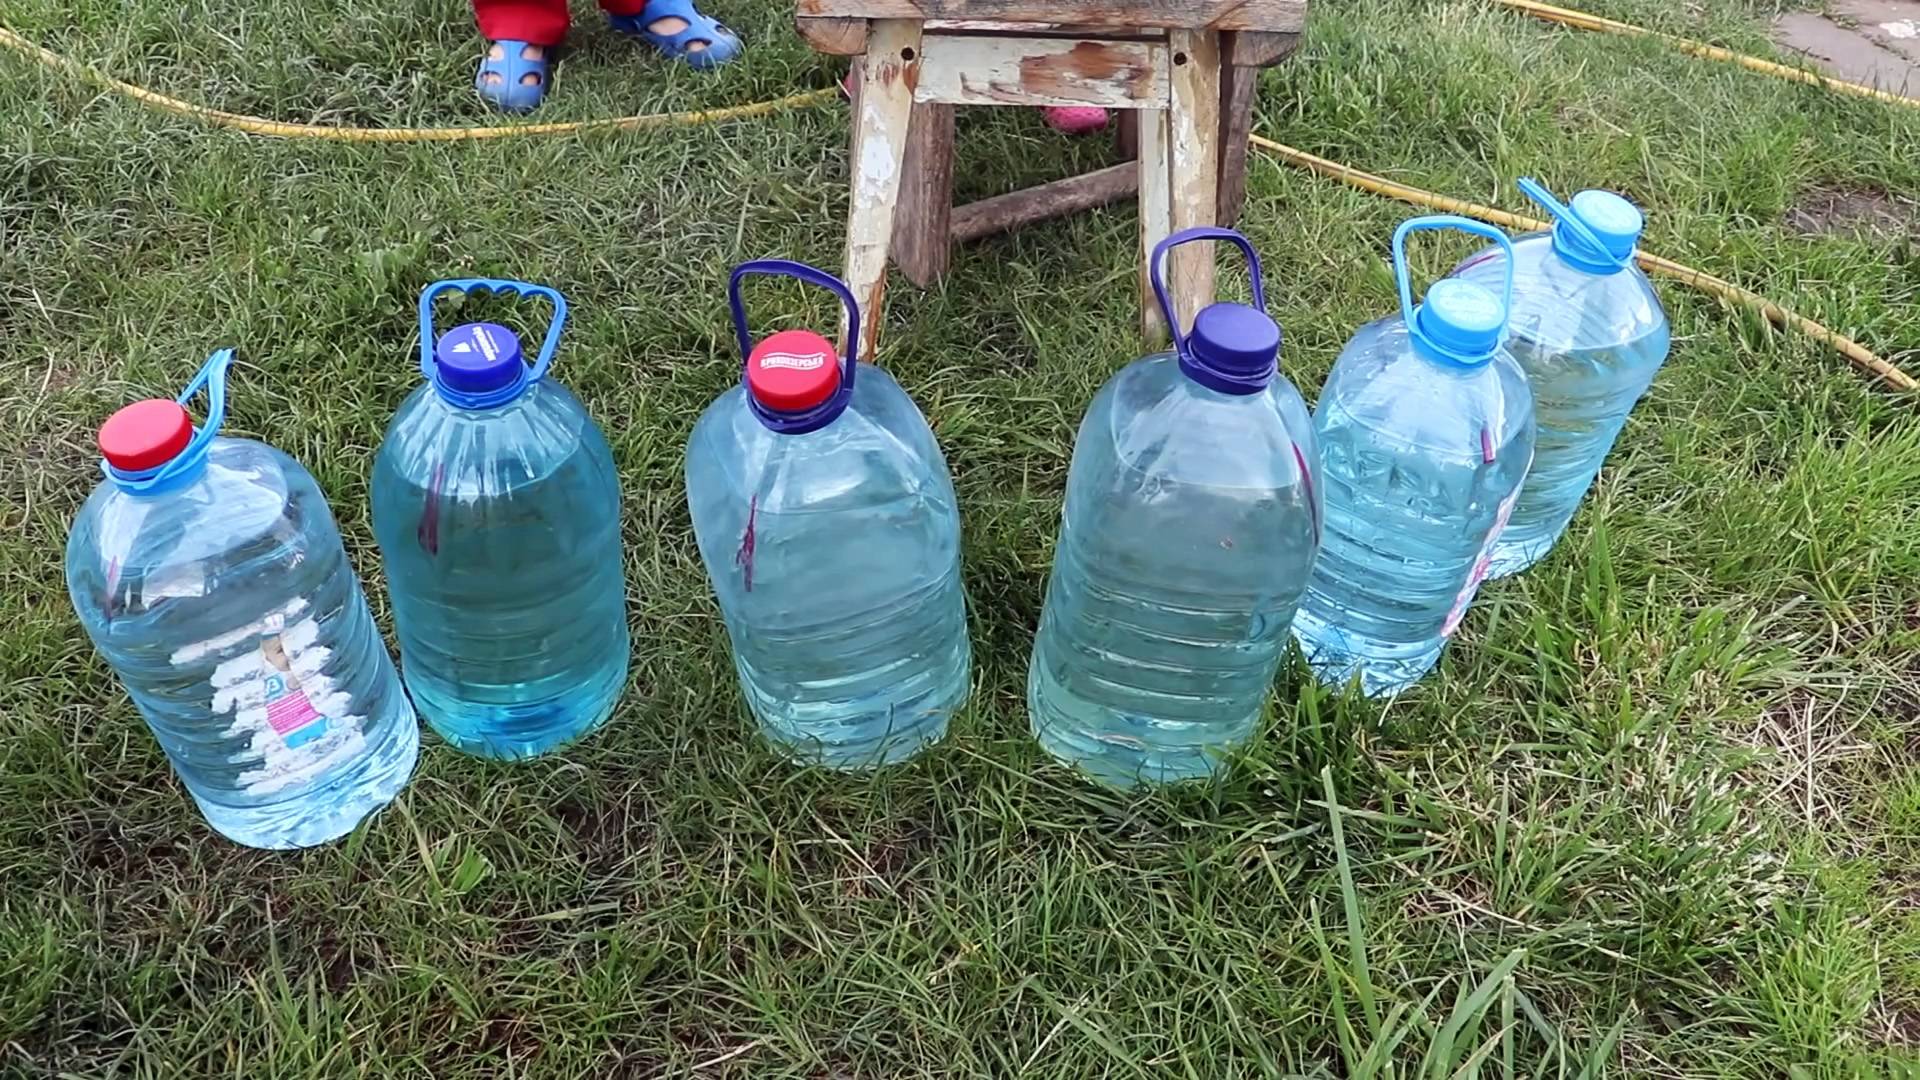 Капельный полив для огурцов из пластиковых бутылок своими руками с видео